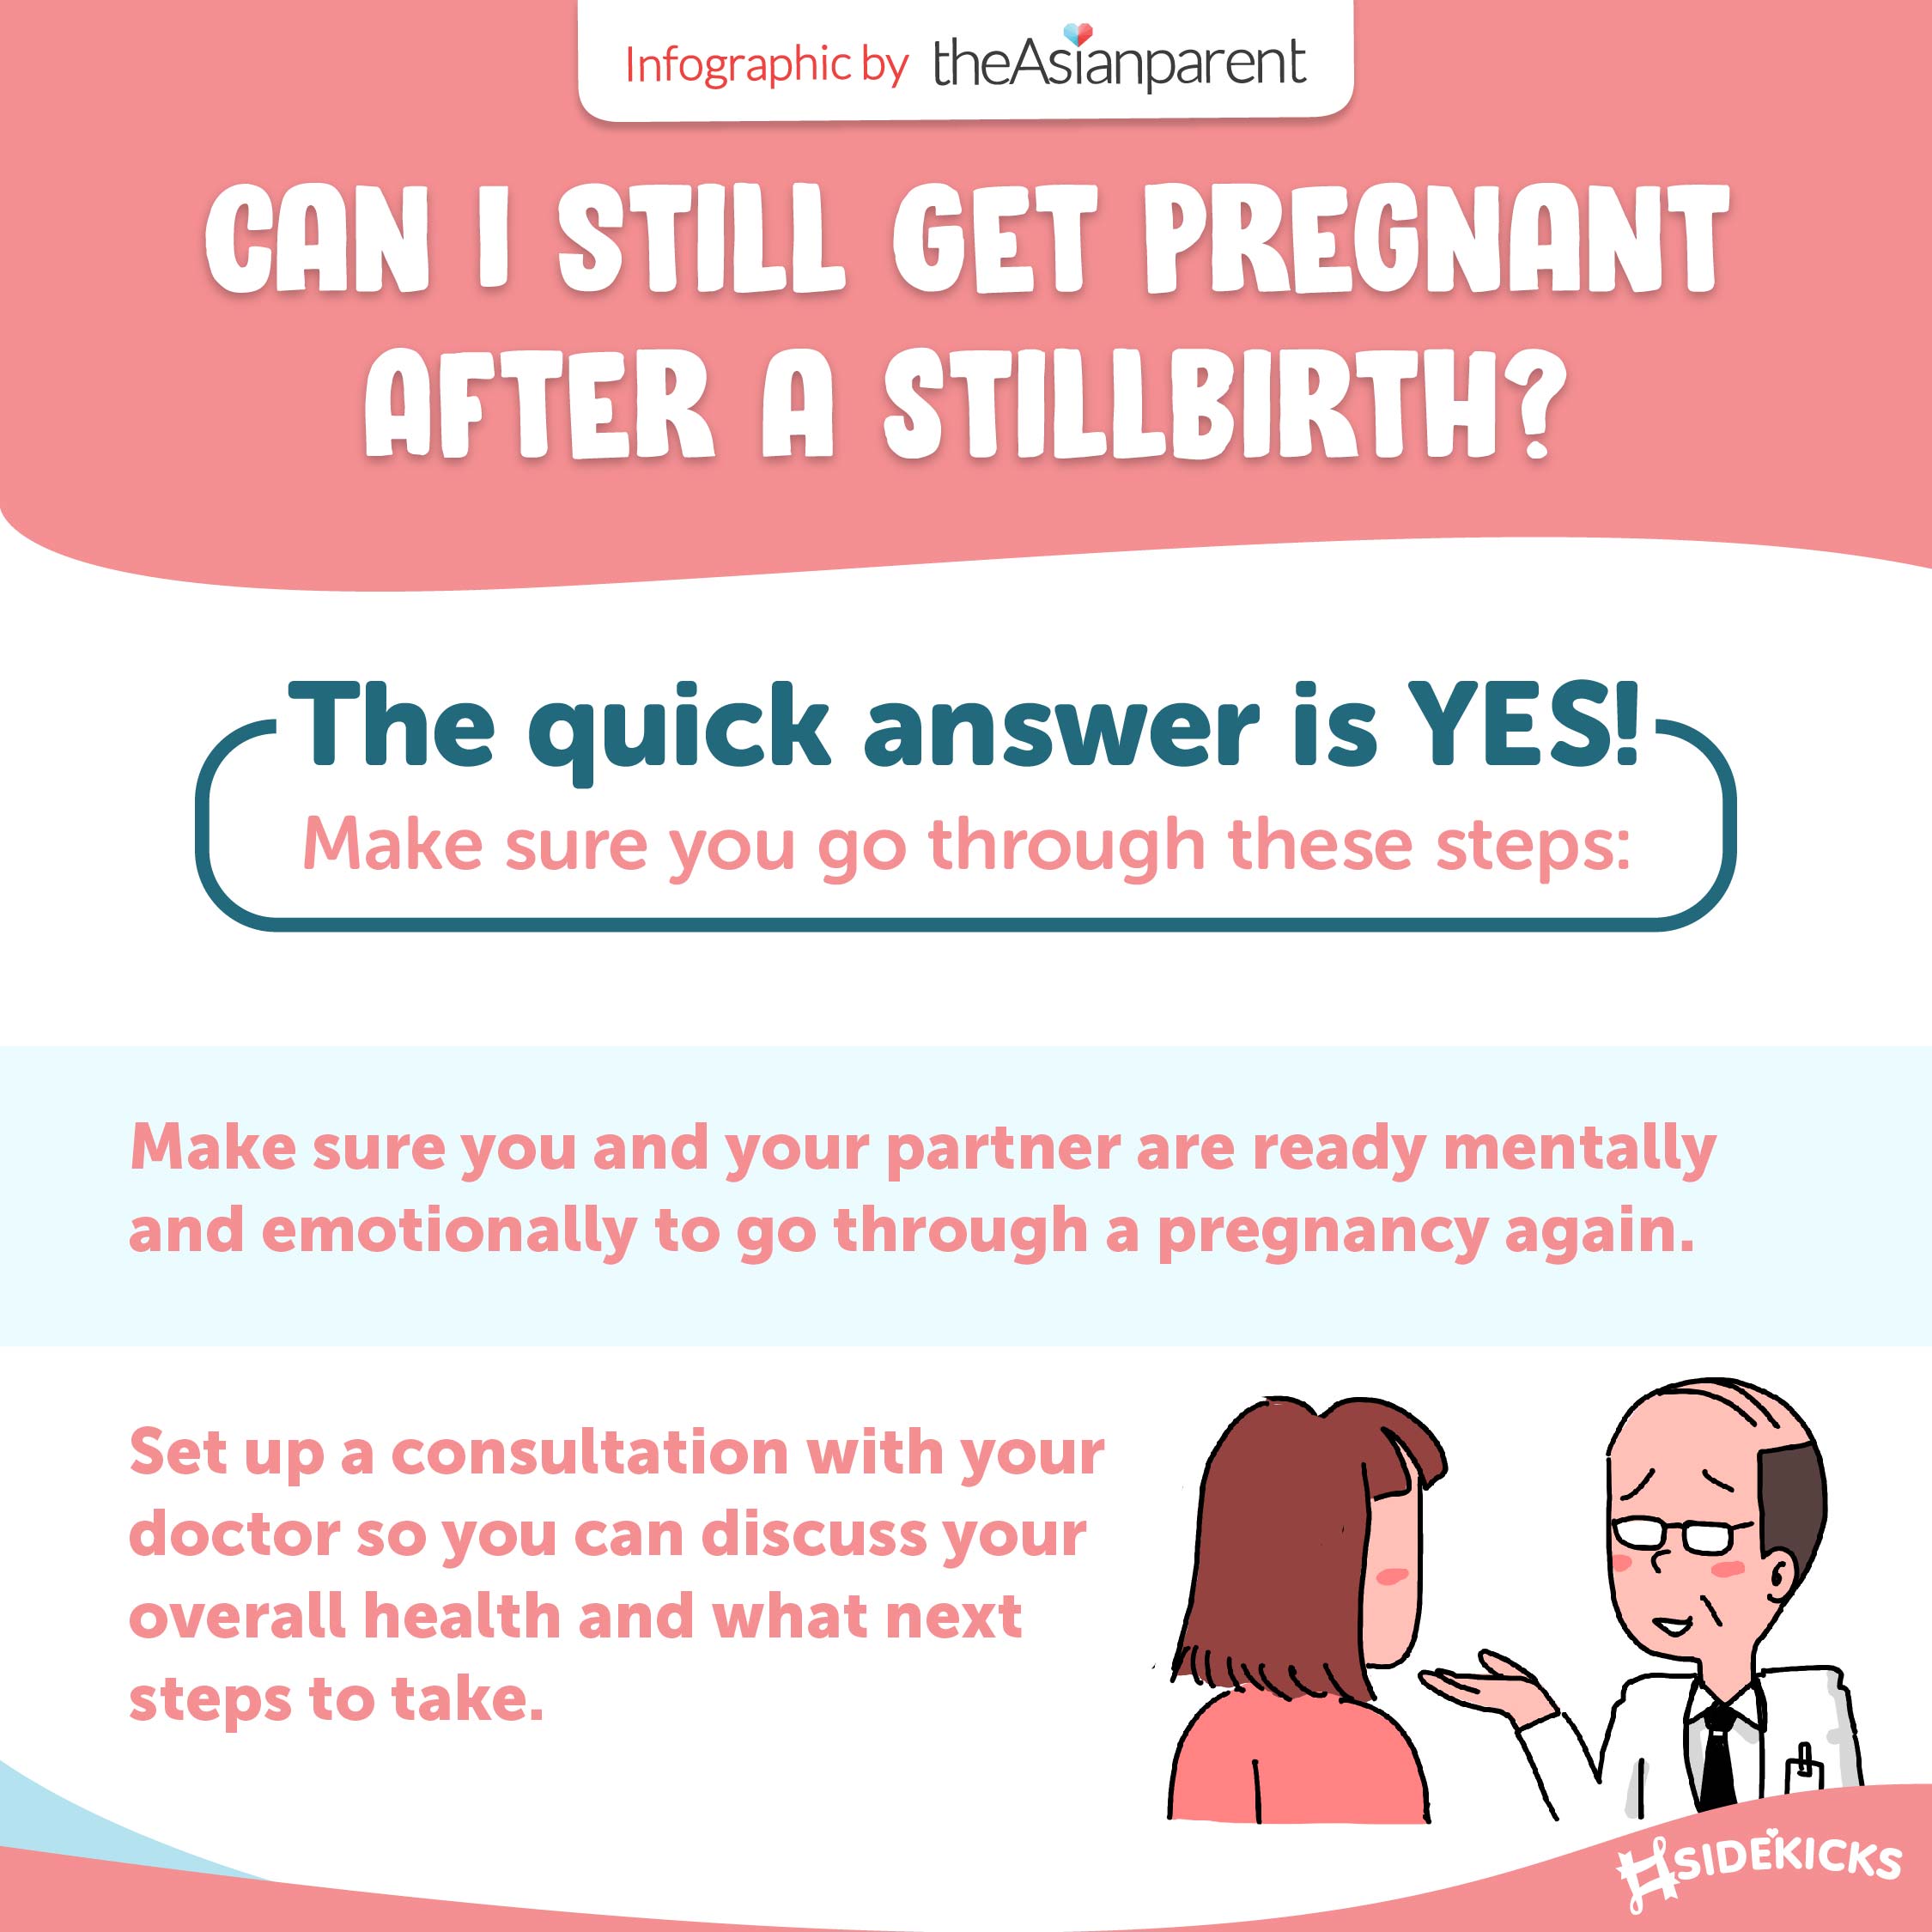 Can I Still Get Pregnant After a Stillbirth?